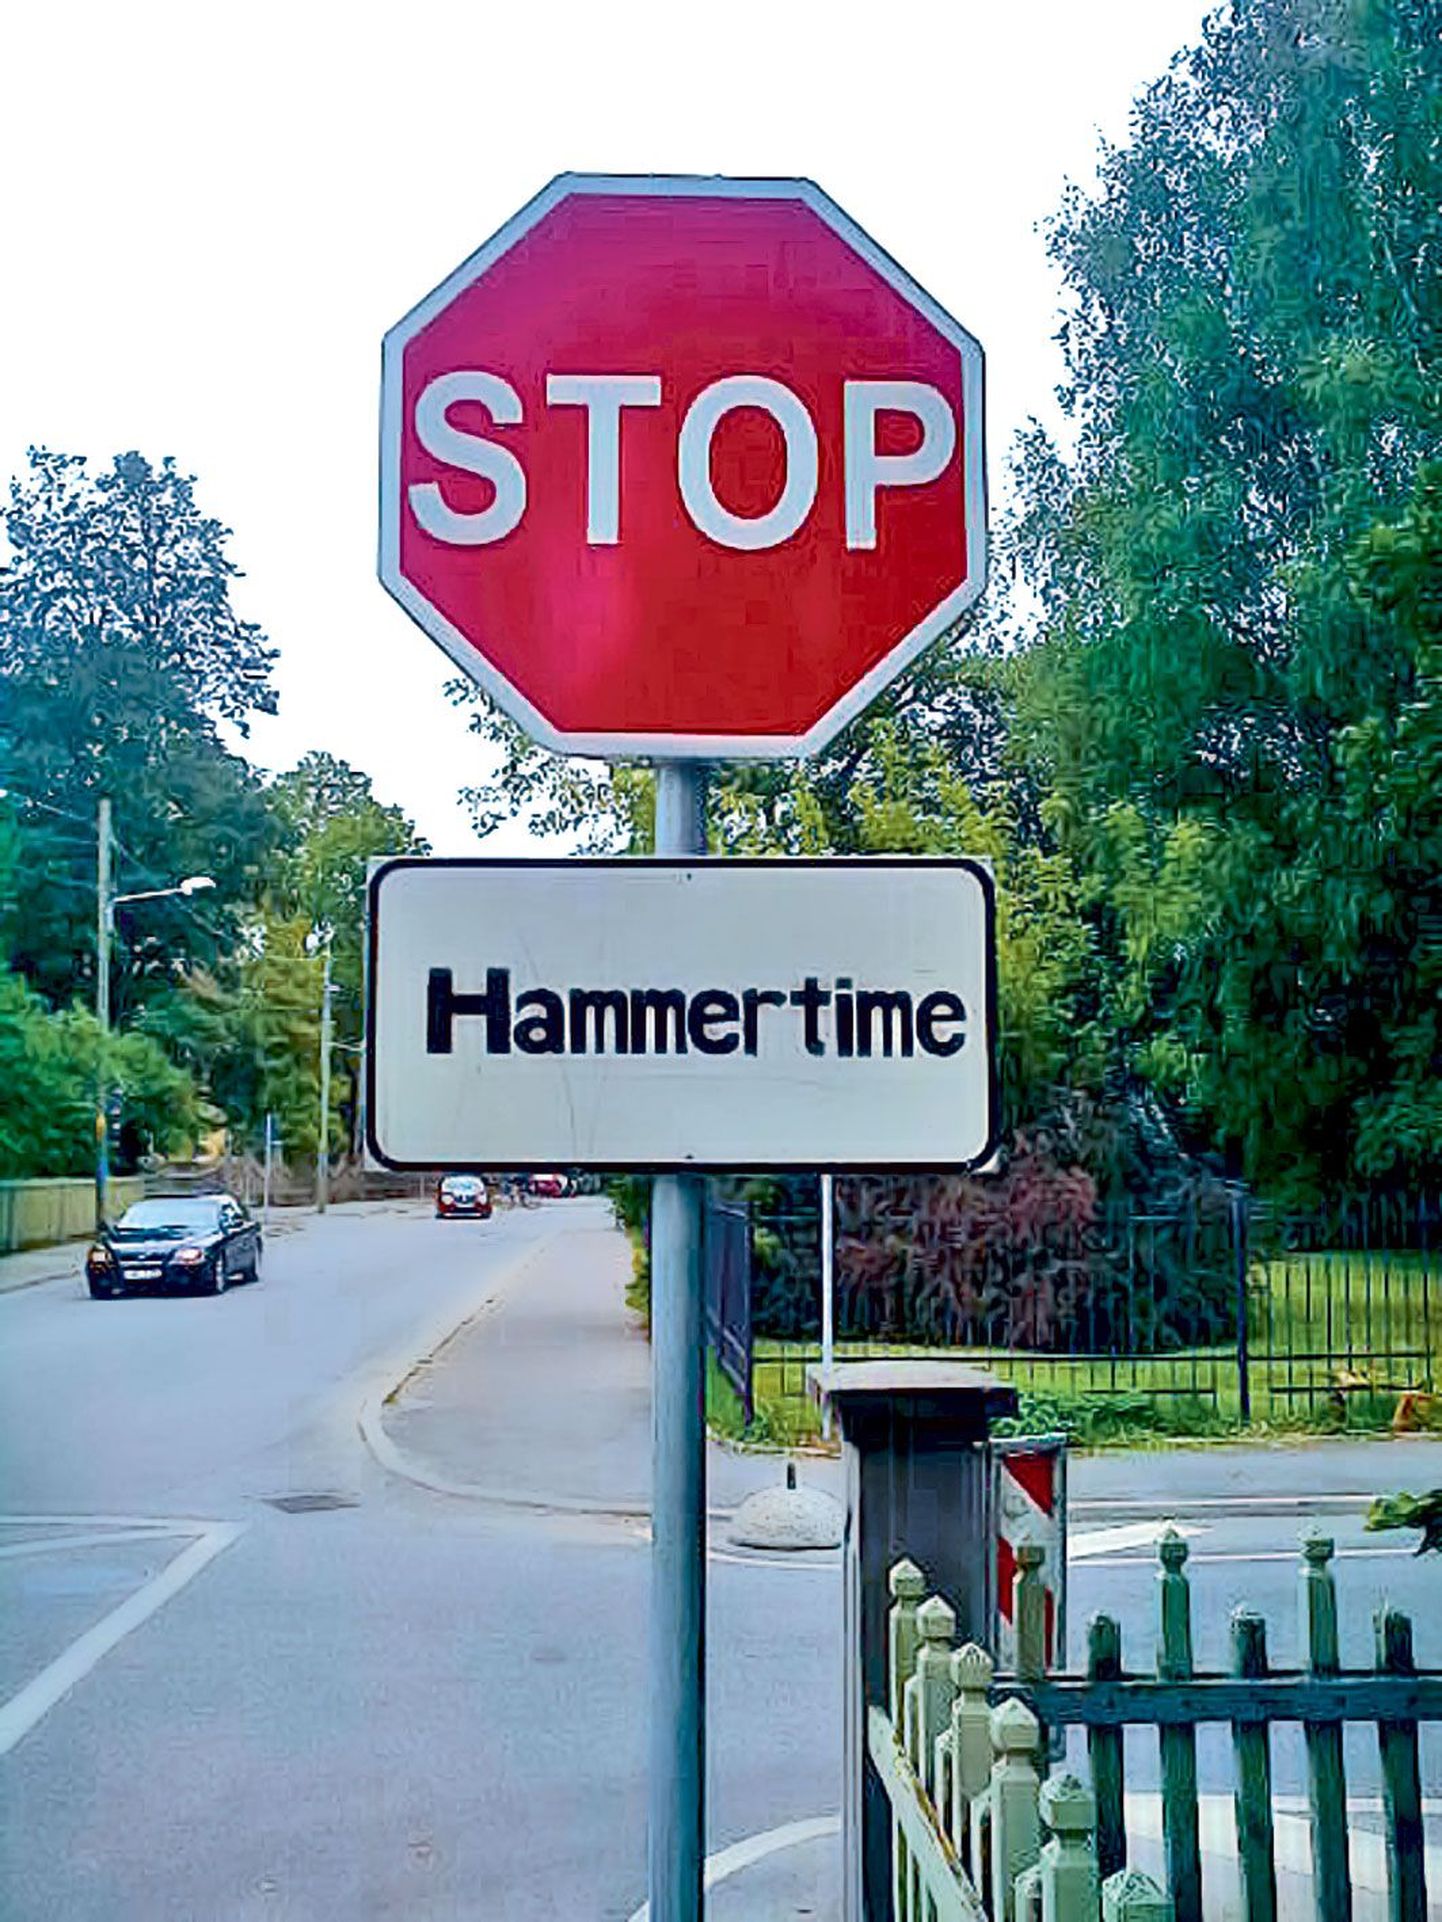 Stoppmärgile tahvli «Hammertime» lisamine võib näida lõbus, kuid on seaduse järgi karistatav ja politsei hinnangul julm nali, kuivõrd autojuhtide eksitamine võib põhjustada liiklusõnnetuse.